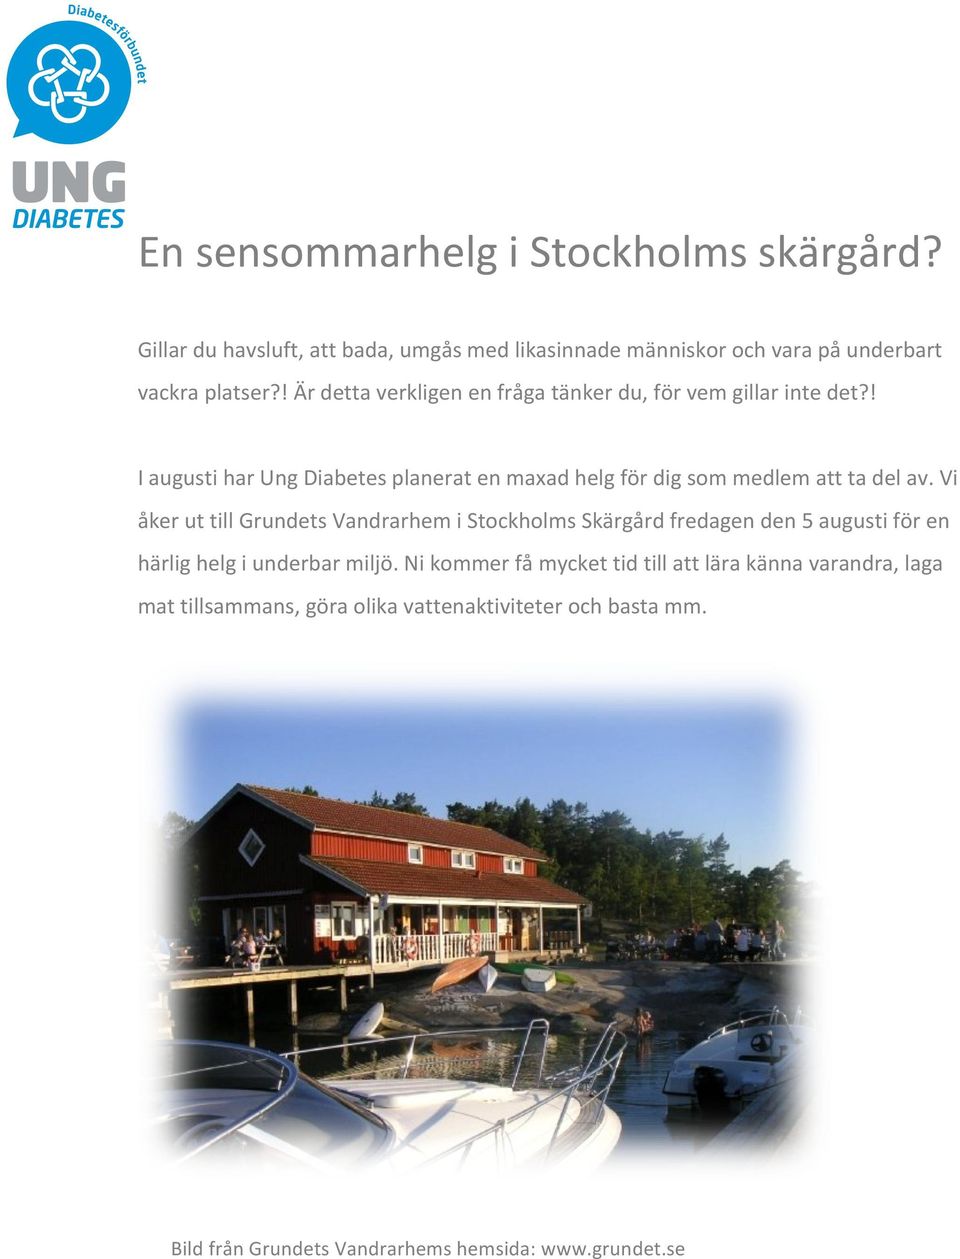 Vi åker ut till Grundets Vandrarhem i Stockholms Skärgård fredagen den 5 augusti för en härlig helg i underbar miljö.